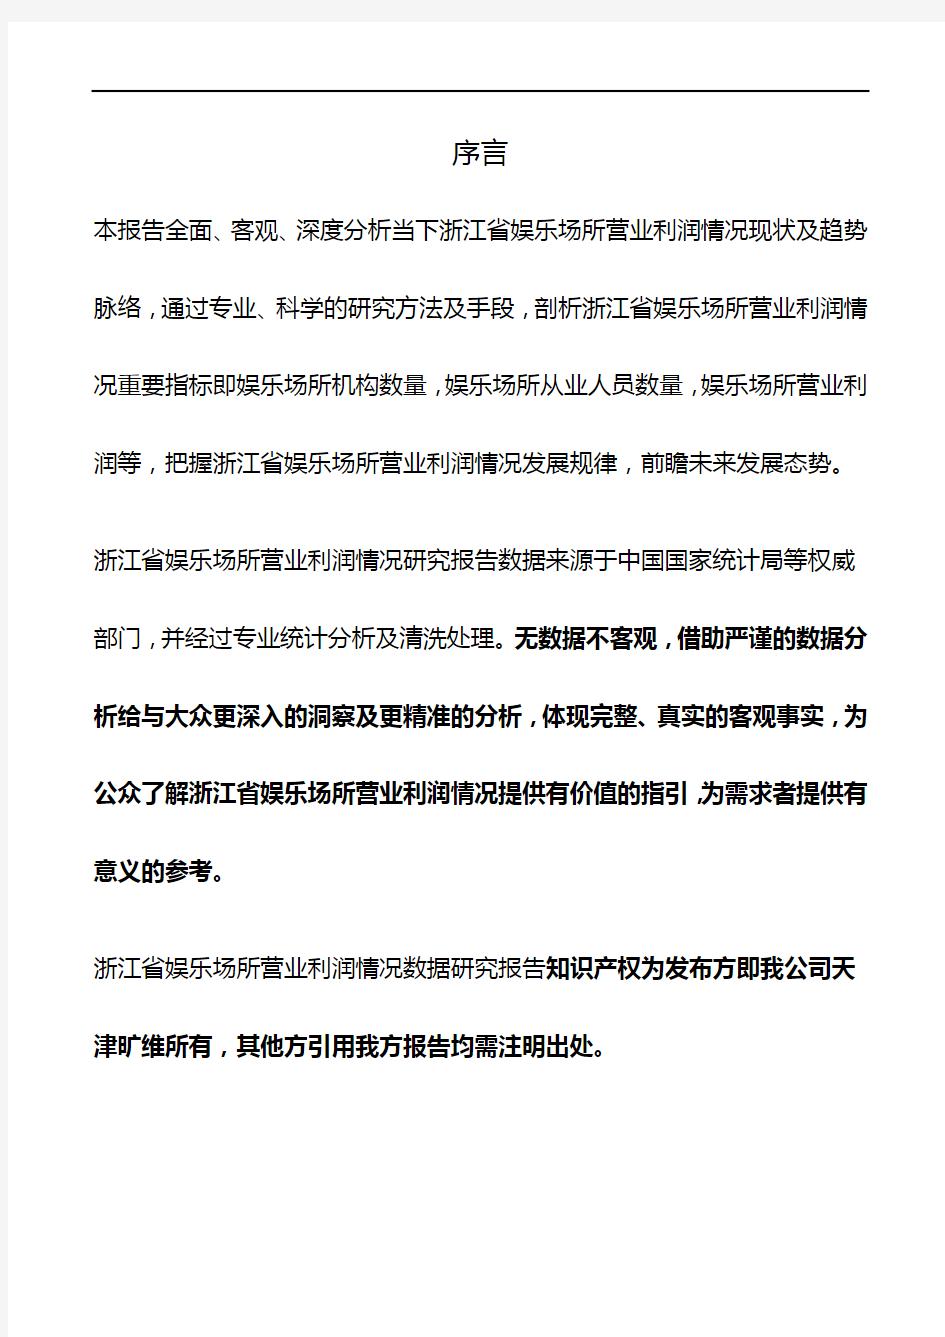 浙江省娱乐场所营业利润情况3年数据研究报告2019版